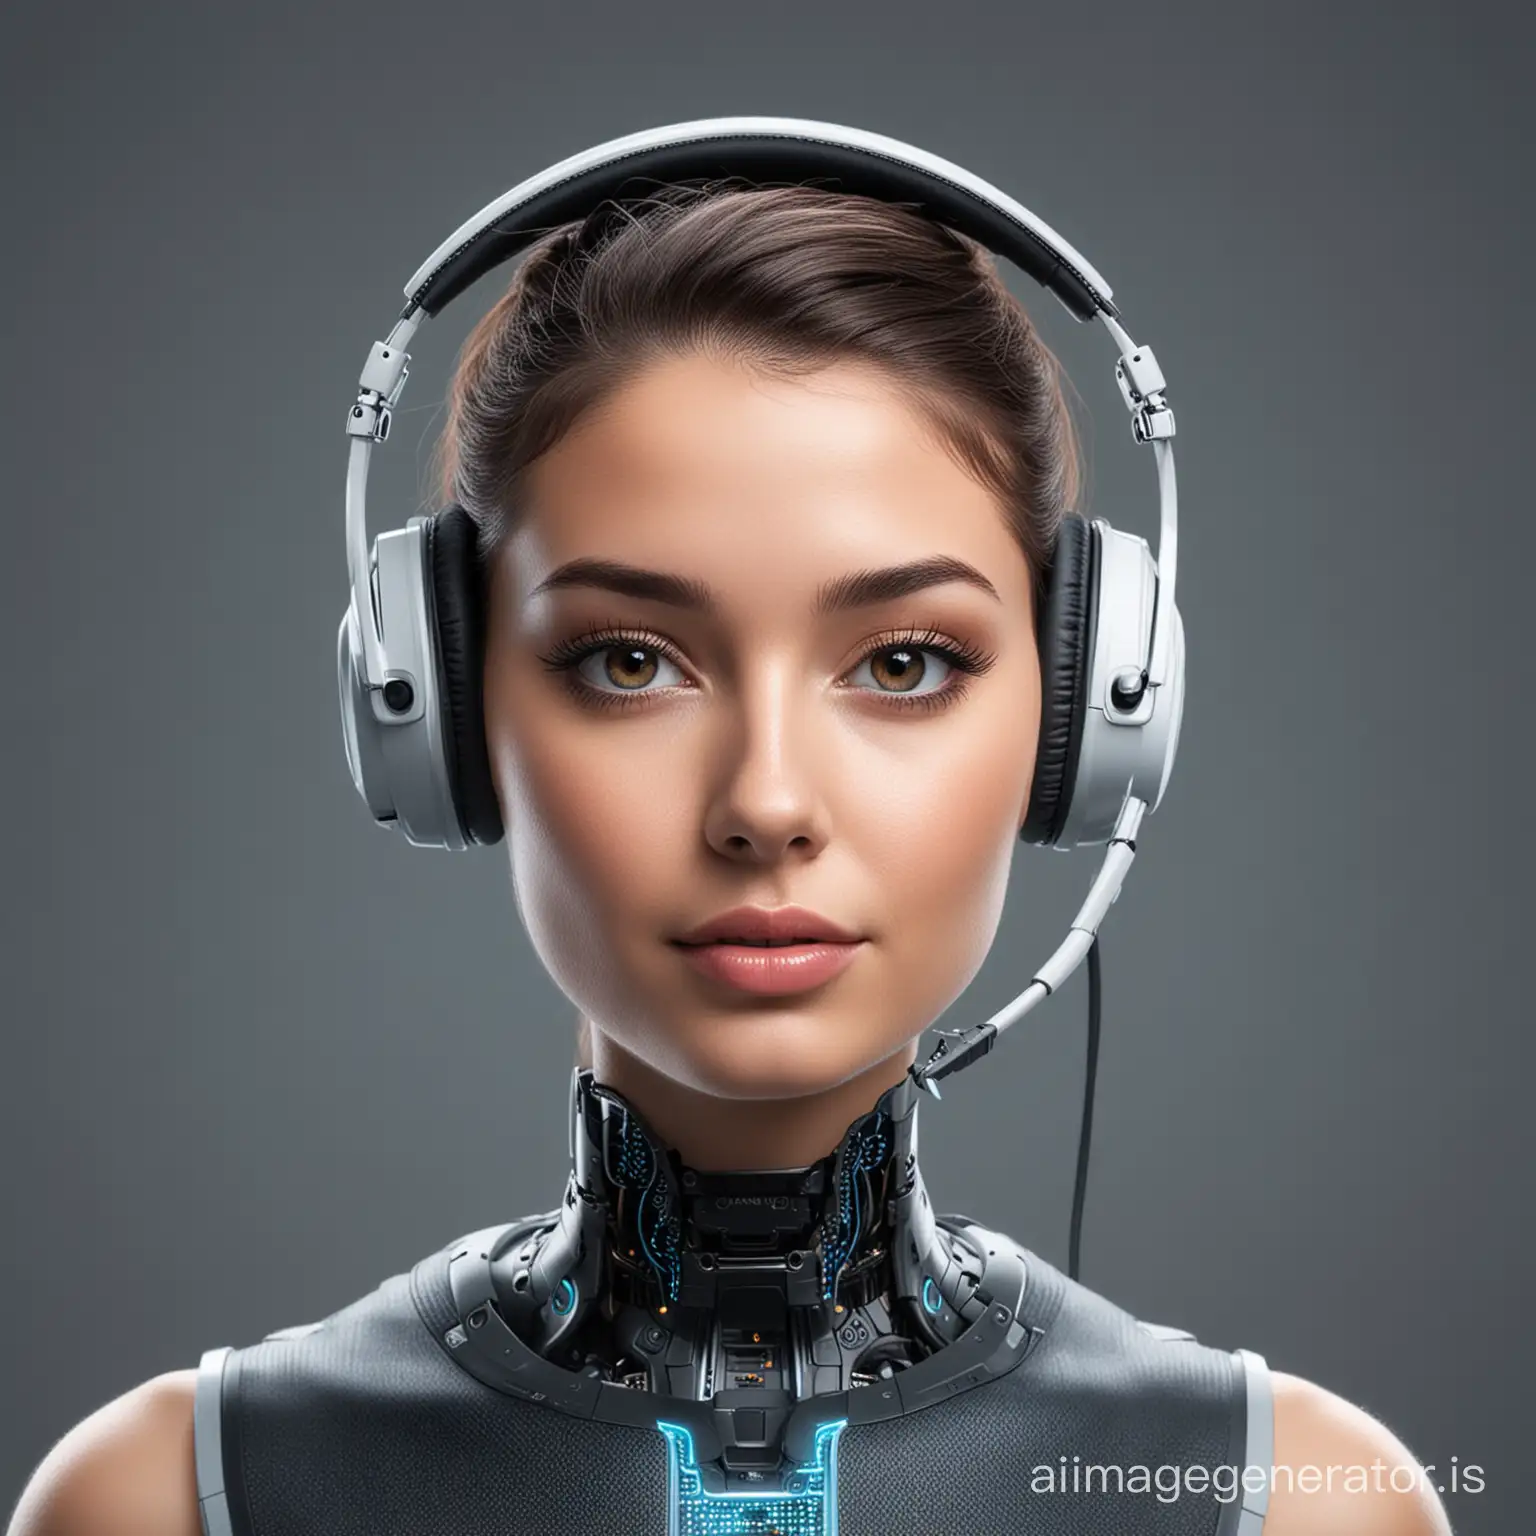 chatbot ai bot wearing headset